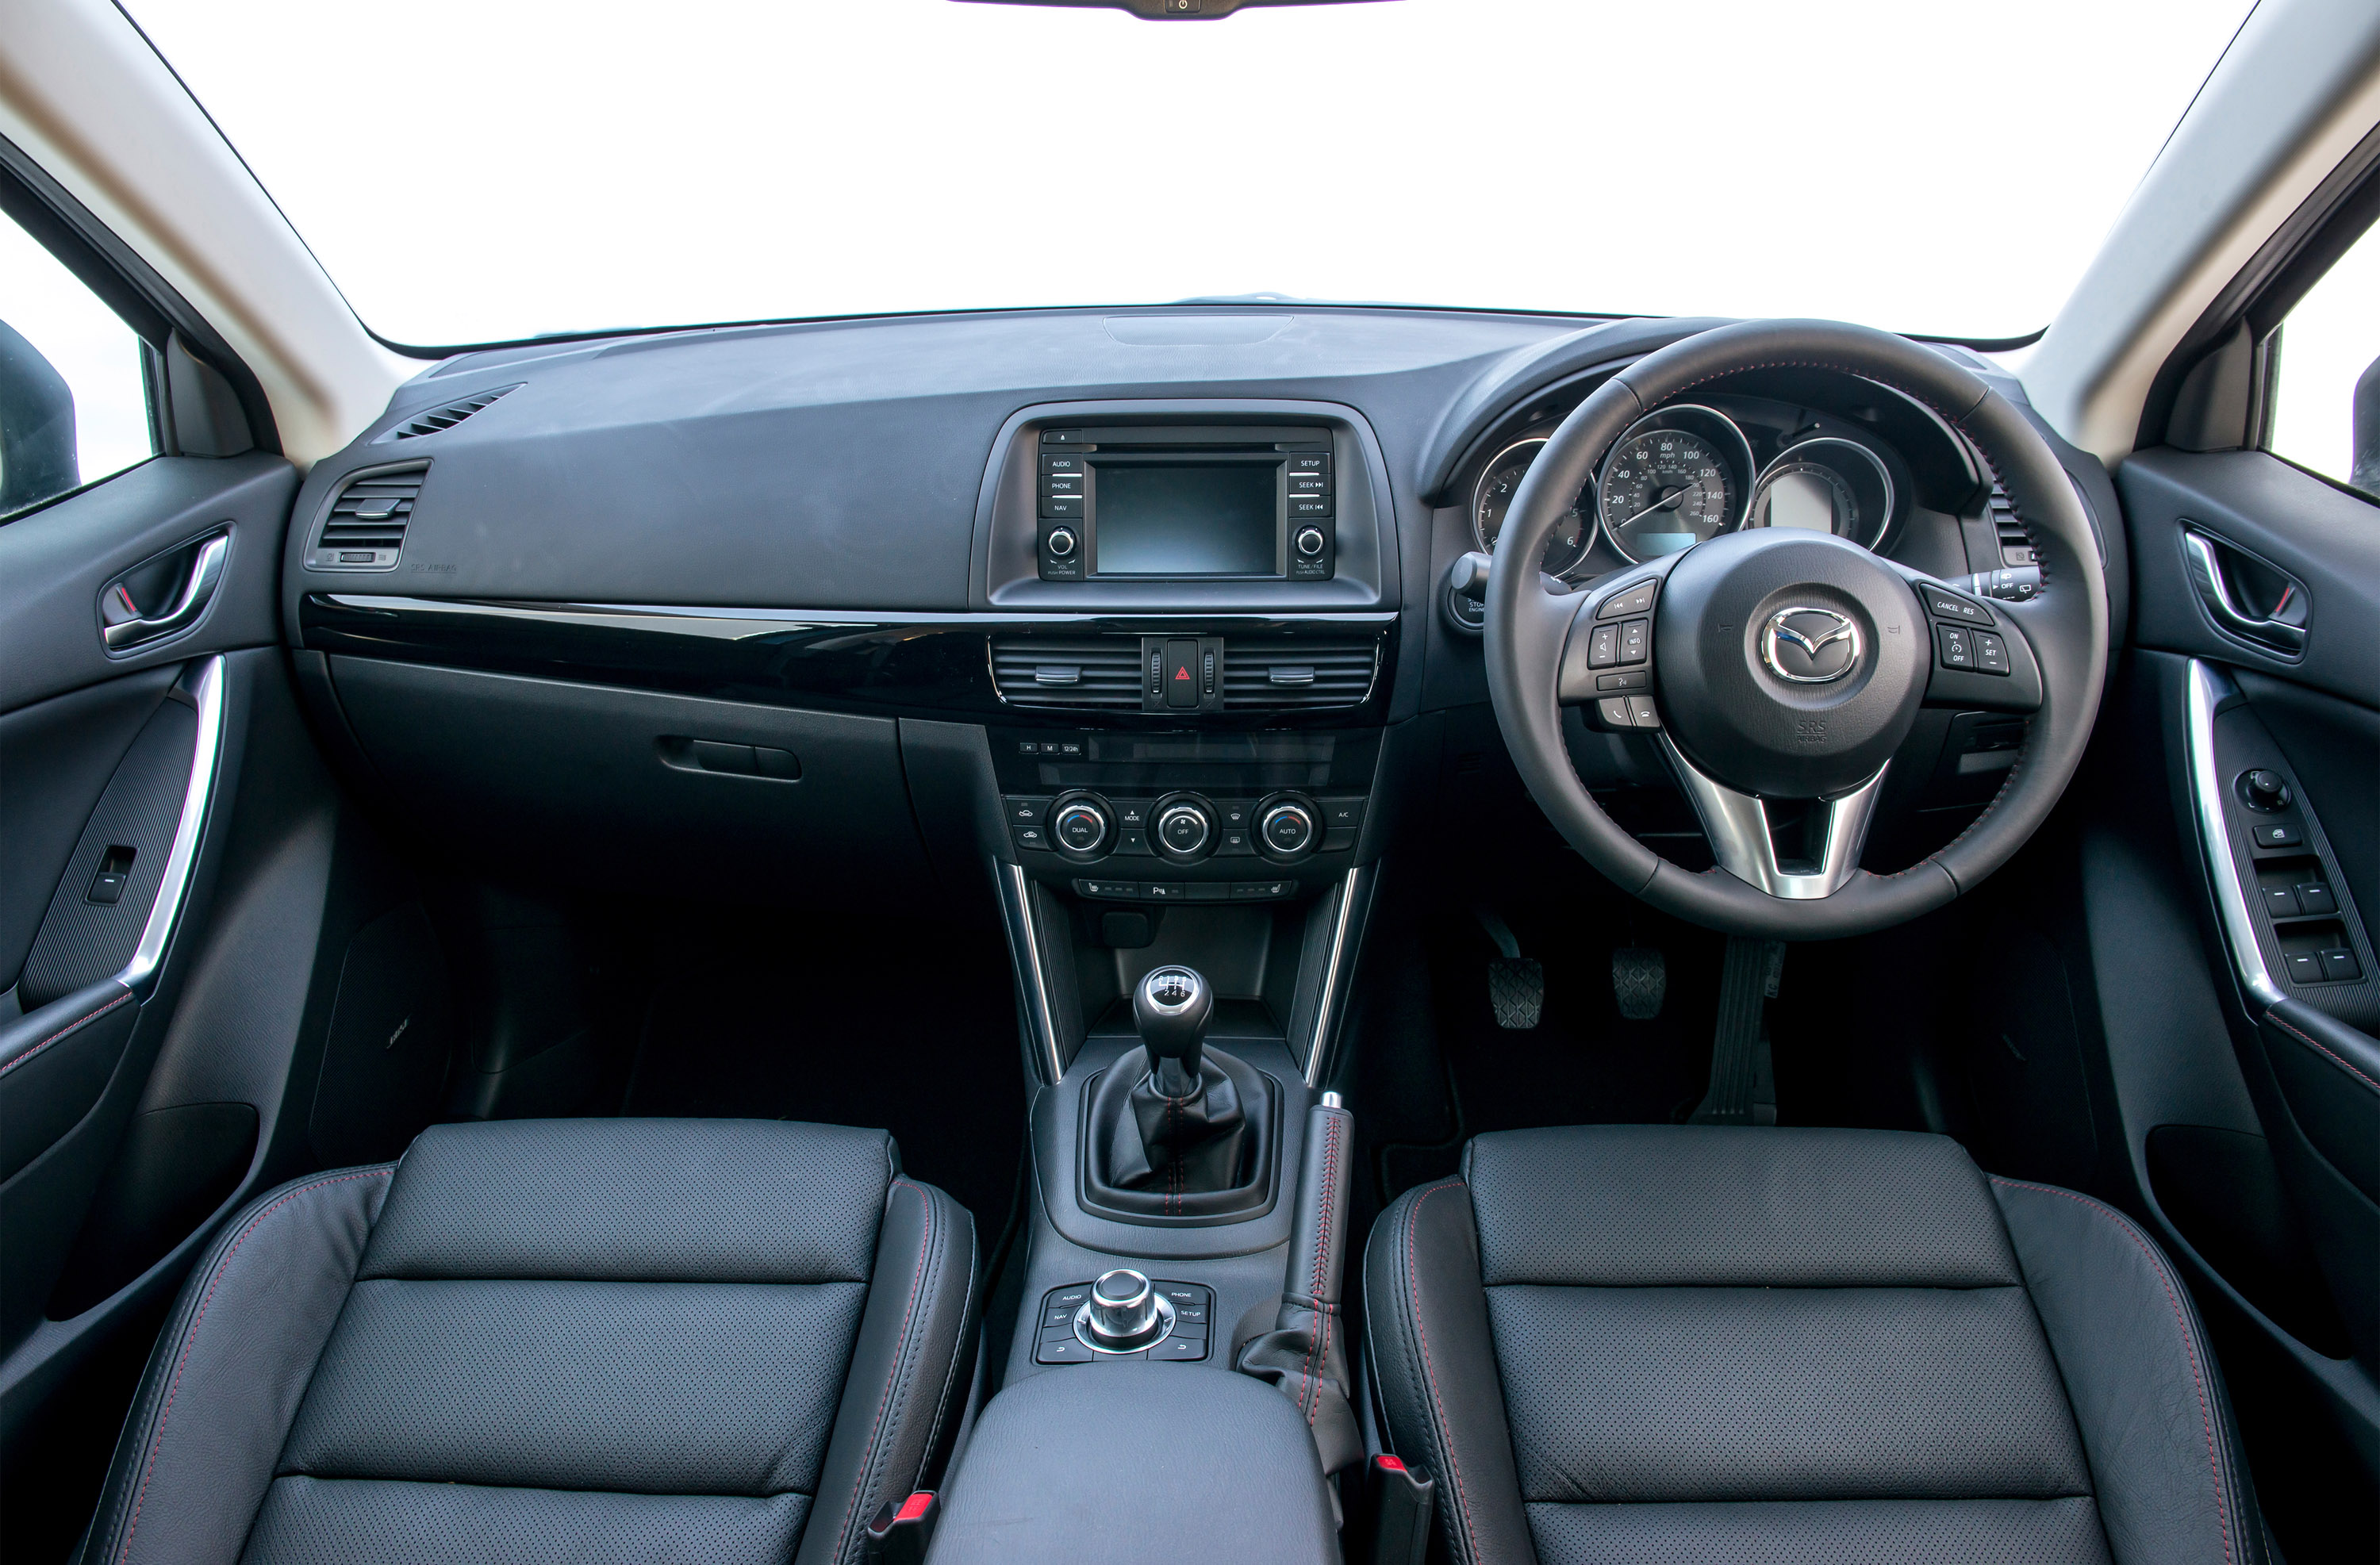 Mazda CX-5 (2014) - picture 6 of 6